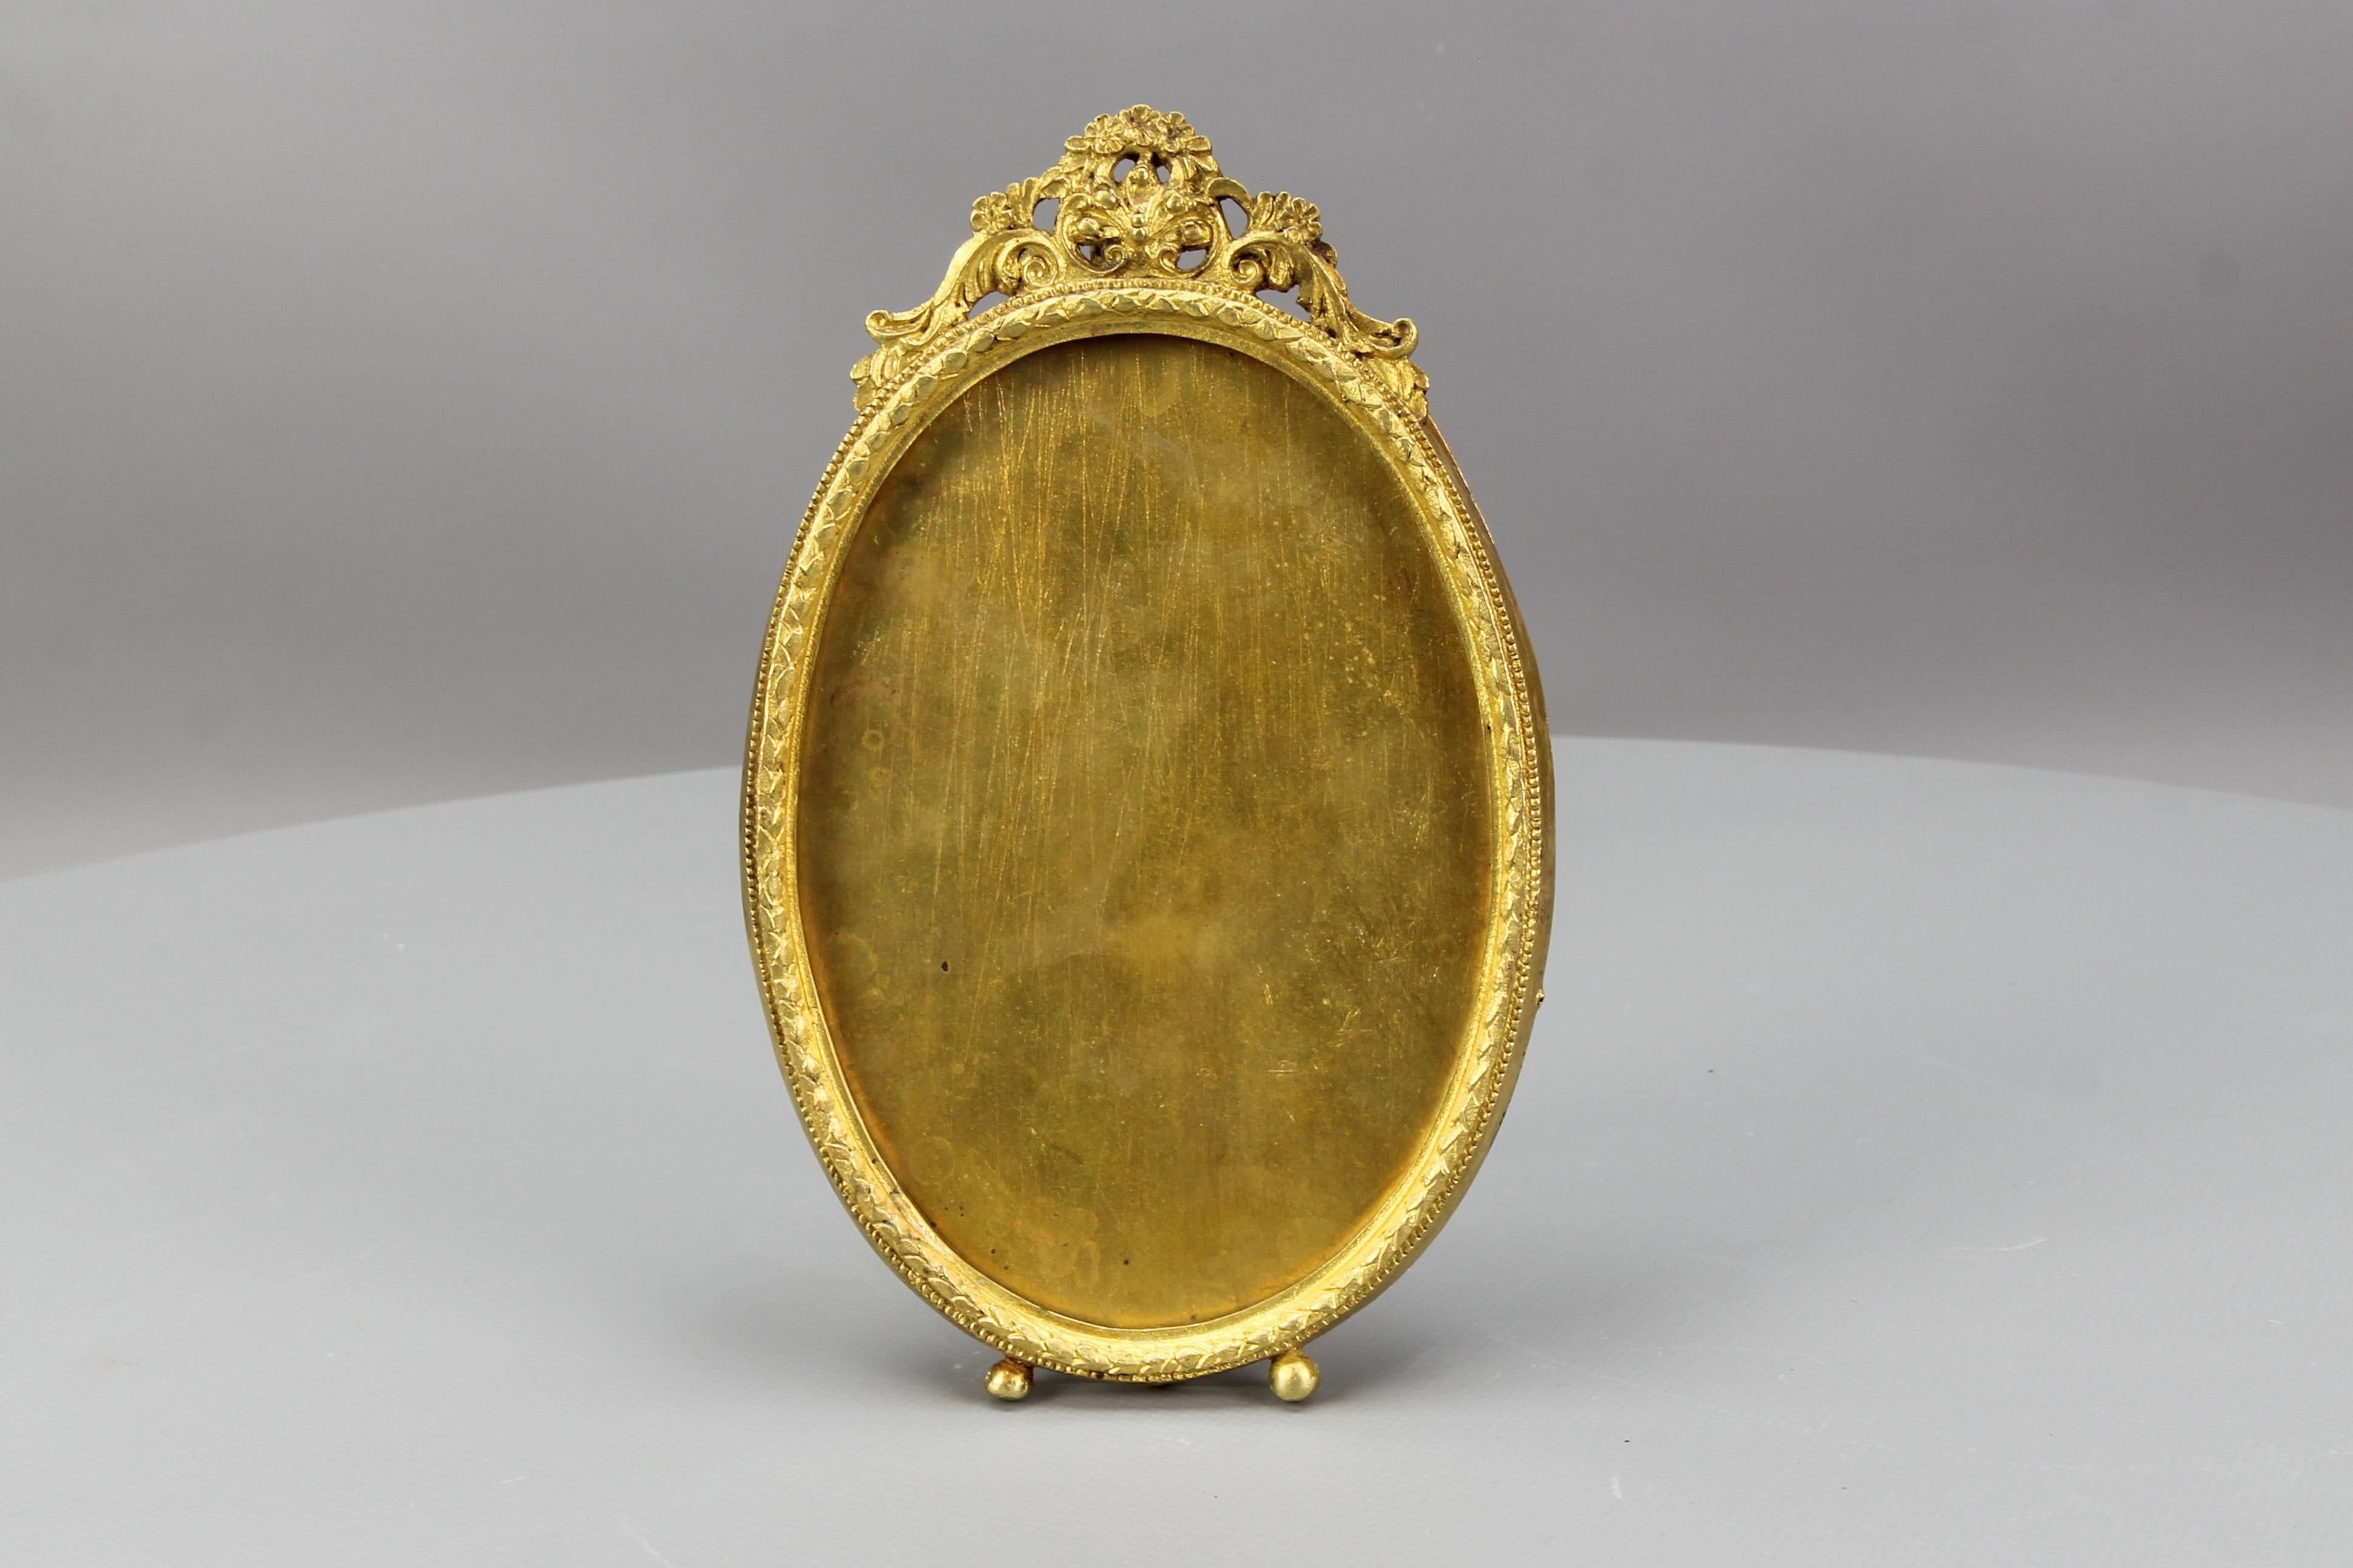 Französisch Louis XVI-Stil Bronze oval Foto oder Bild Desktop Staffelei Rahmen aus circa den 1900er Jahren.
Dieser bezaubernde Bilderrahmen ist aus Bronze und Messing gefertigt und hat auf der Rückseite ein Stützbein für eine Staffelei. Verziert mit